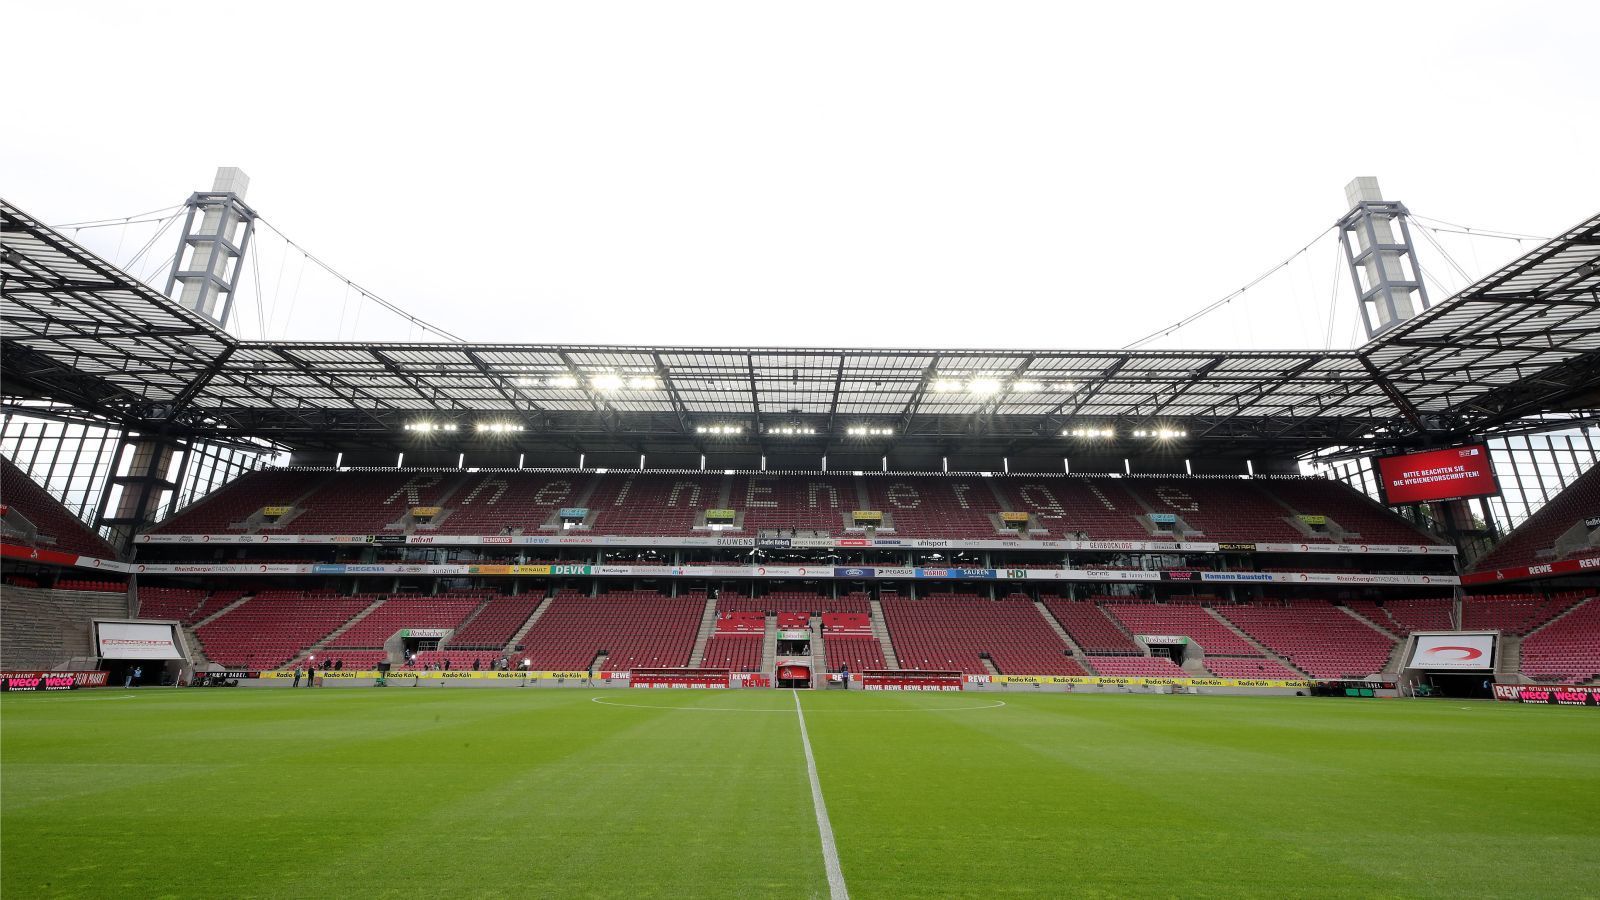 
                <strong>1. FC Köln</strong><br>
                Allerdings hofft der 1. FC Köln im Falle des Erreichens der Relegation auf mögliche Zuschauer. In der Stadt Köln liegt die Inzidenz bei rund 104 (Stand: 18. Mai), jedoch findet das Relegations-Heimspiel am 26. Mai statt. Sollte die Inzidenz in Köln also bald unter 100 sinken und bleiben, könnten zu diesem Spiel bis zu 500 Zuschauer kommen.
              